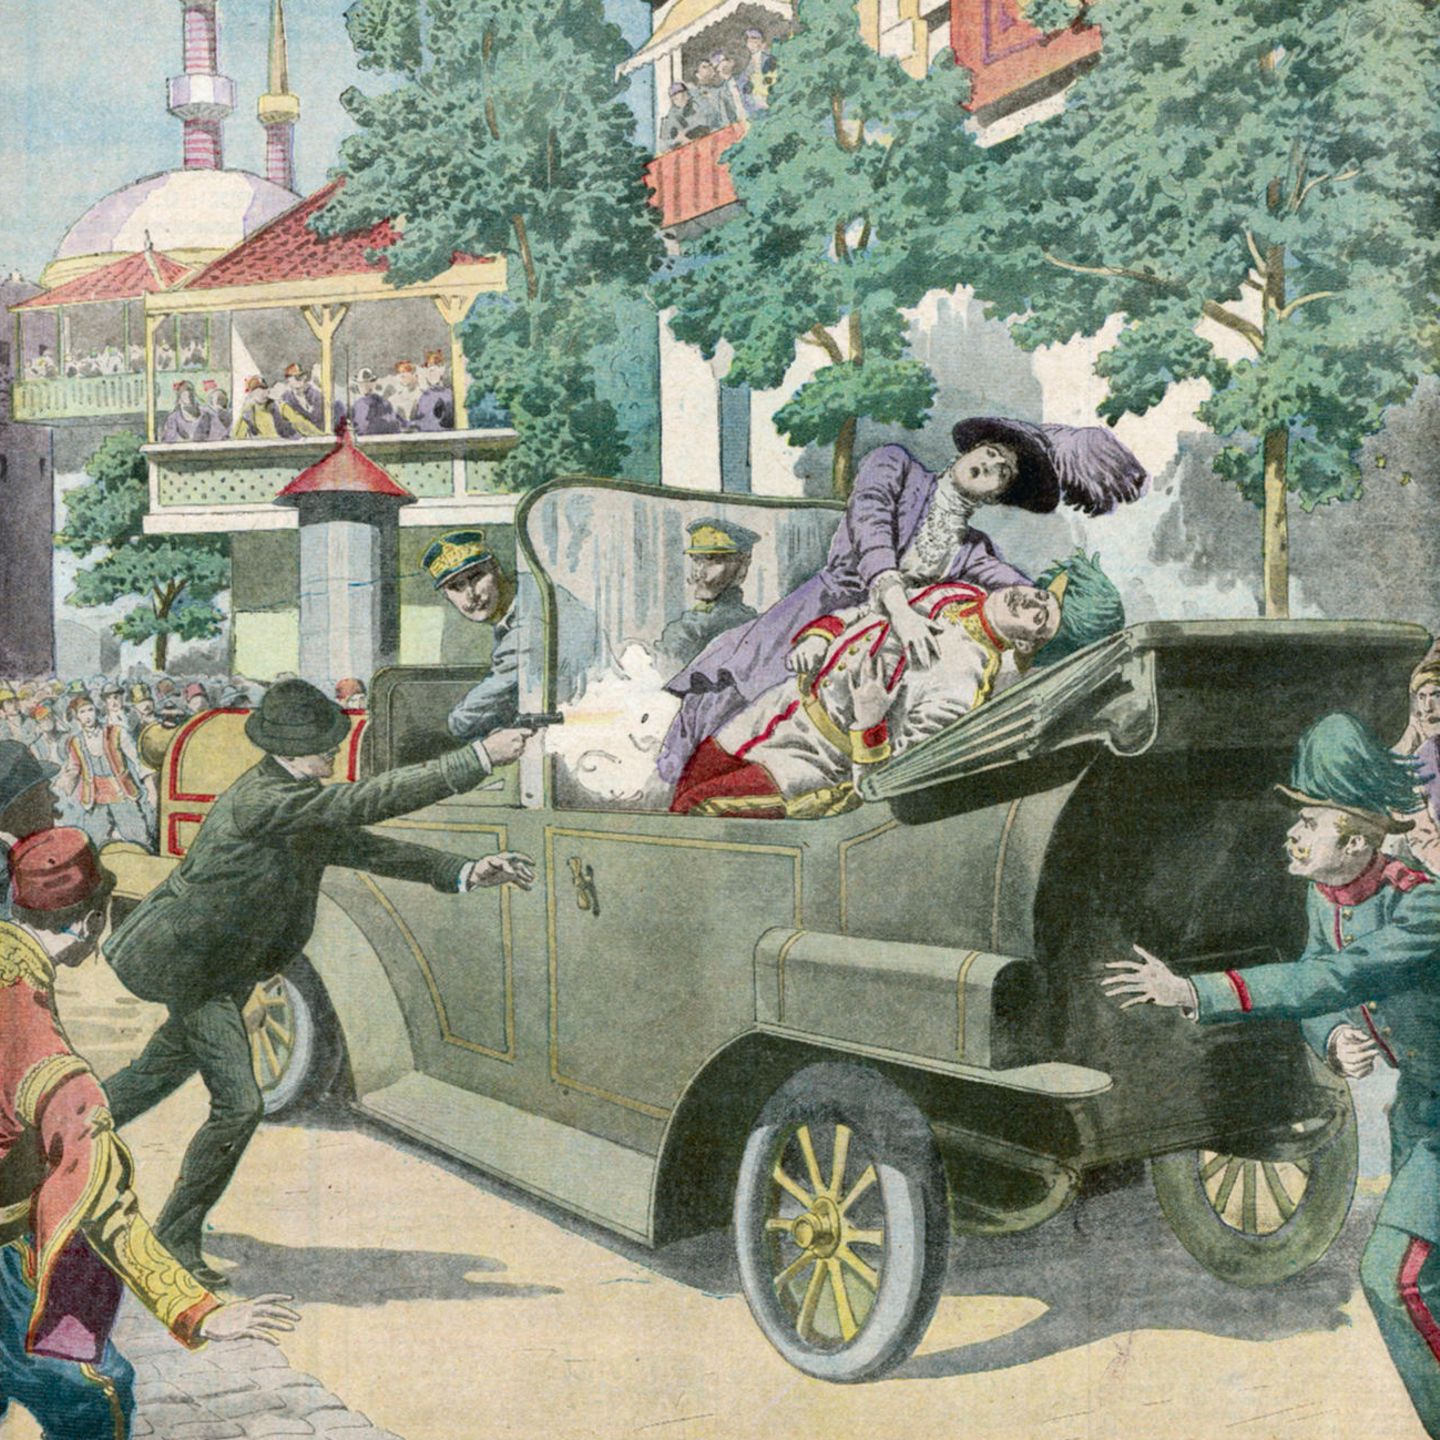 Erster Weltkrieg: Der serbische Nationalist Gavrilo Princip feuert am 28. Juni 1914 auf das österreichisch-ungarische Thronfolgerpaar. Das Attentat wird zum Zündfunken für den Ersten Weltkrieg